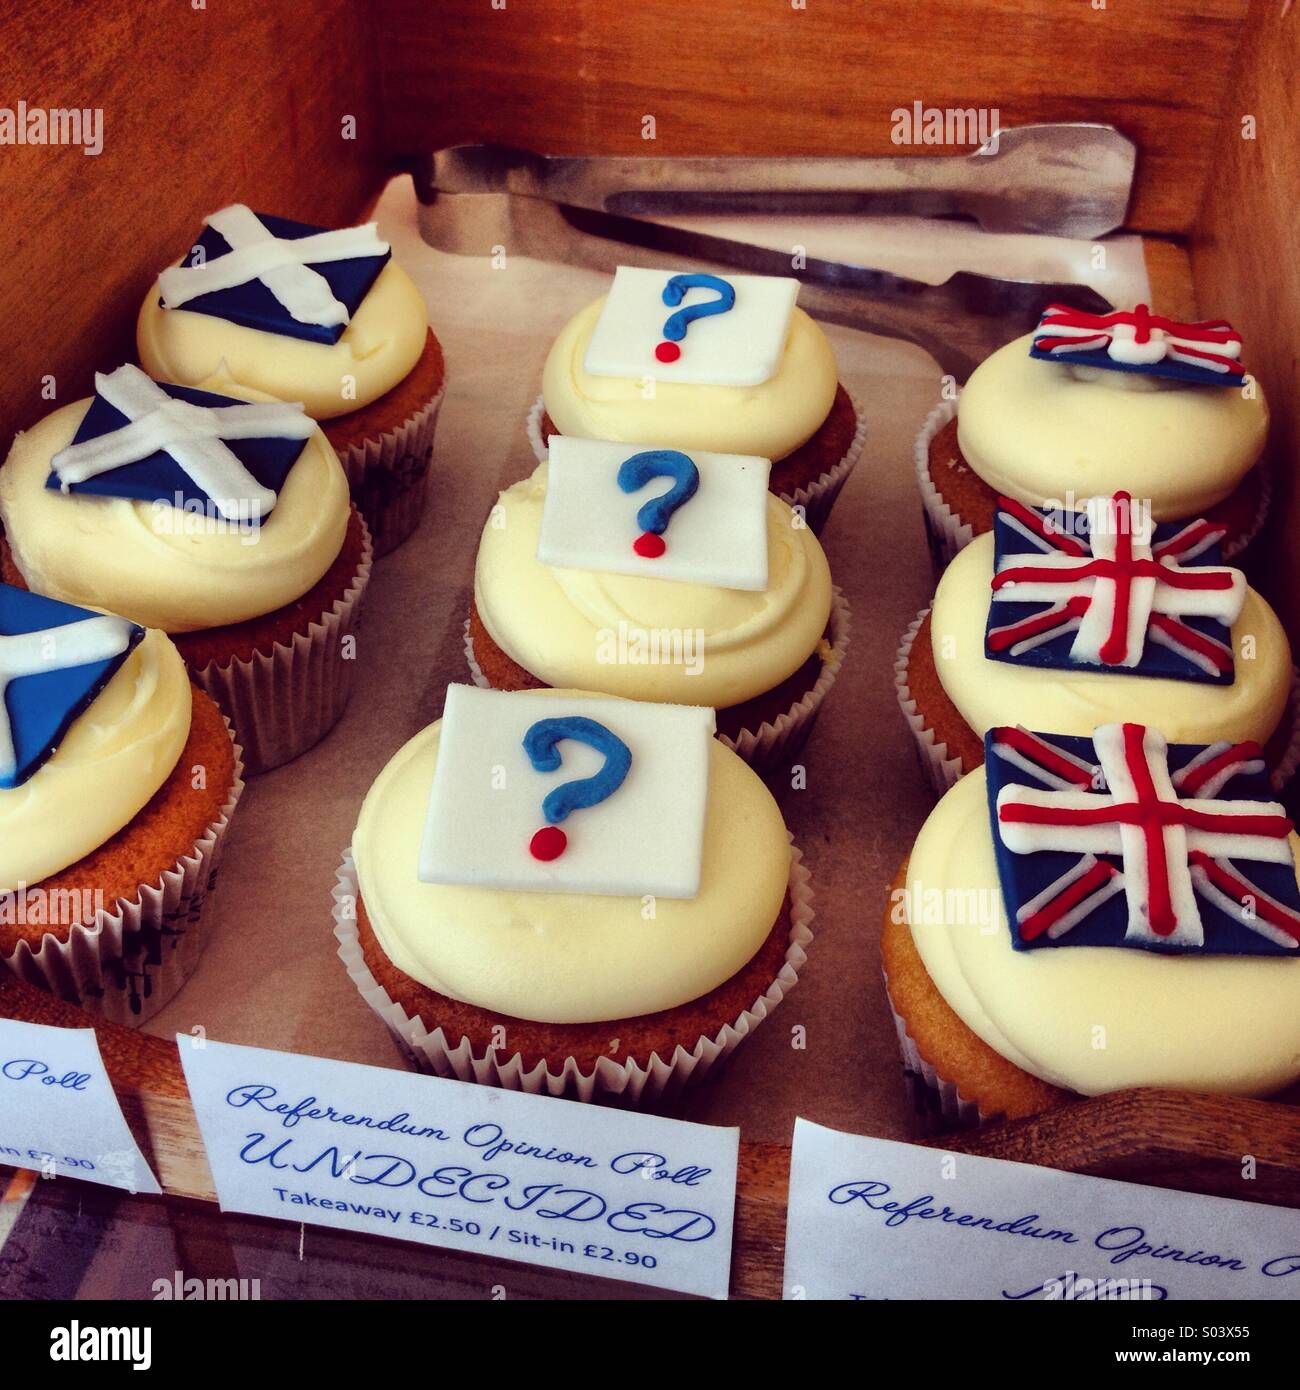 Kuchen, spiegelt die unterschiedlichen Meinungen für den bevorstehenden schottischen Unabhängigkeitsreferendum. Stockfoto